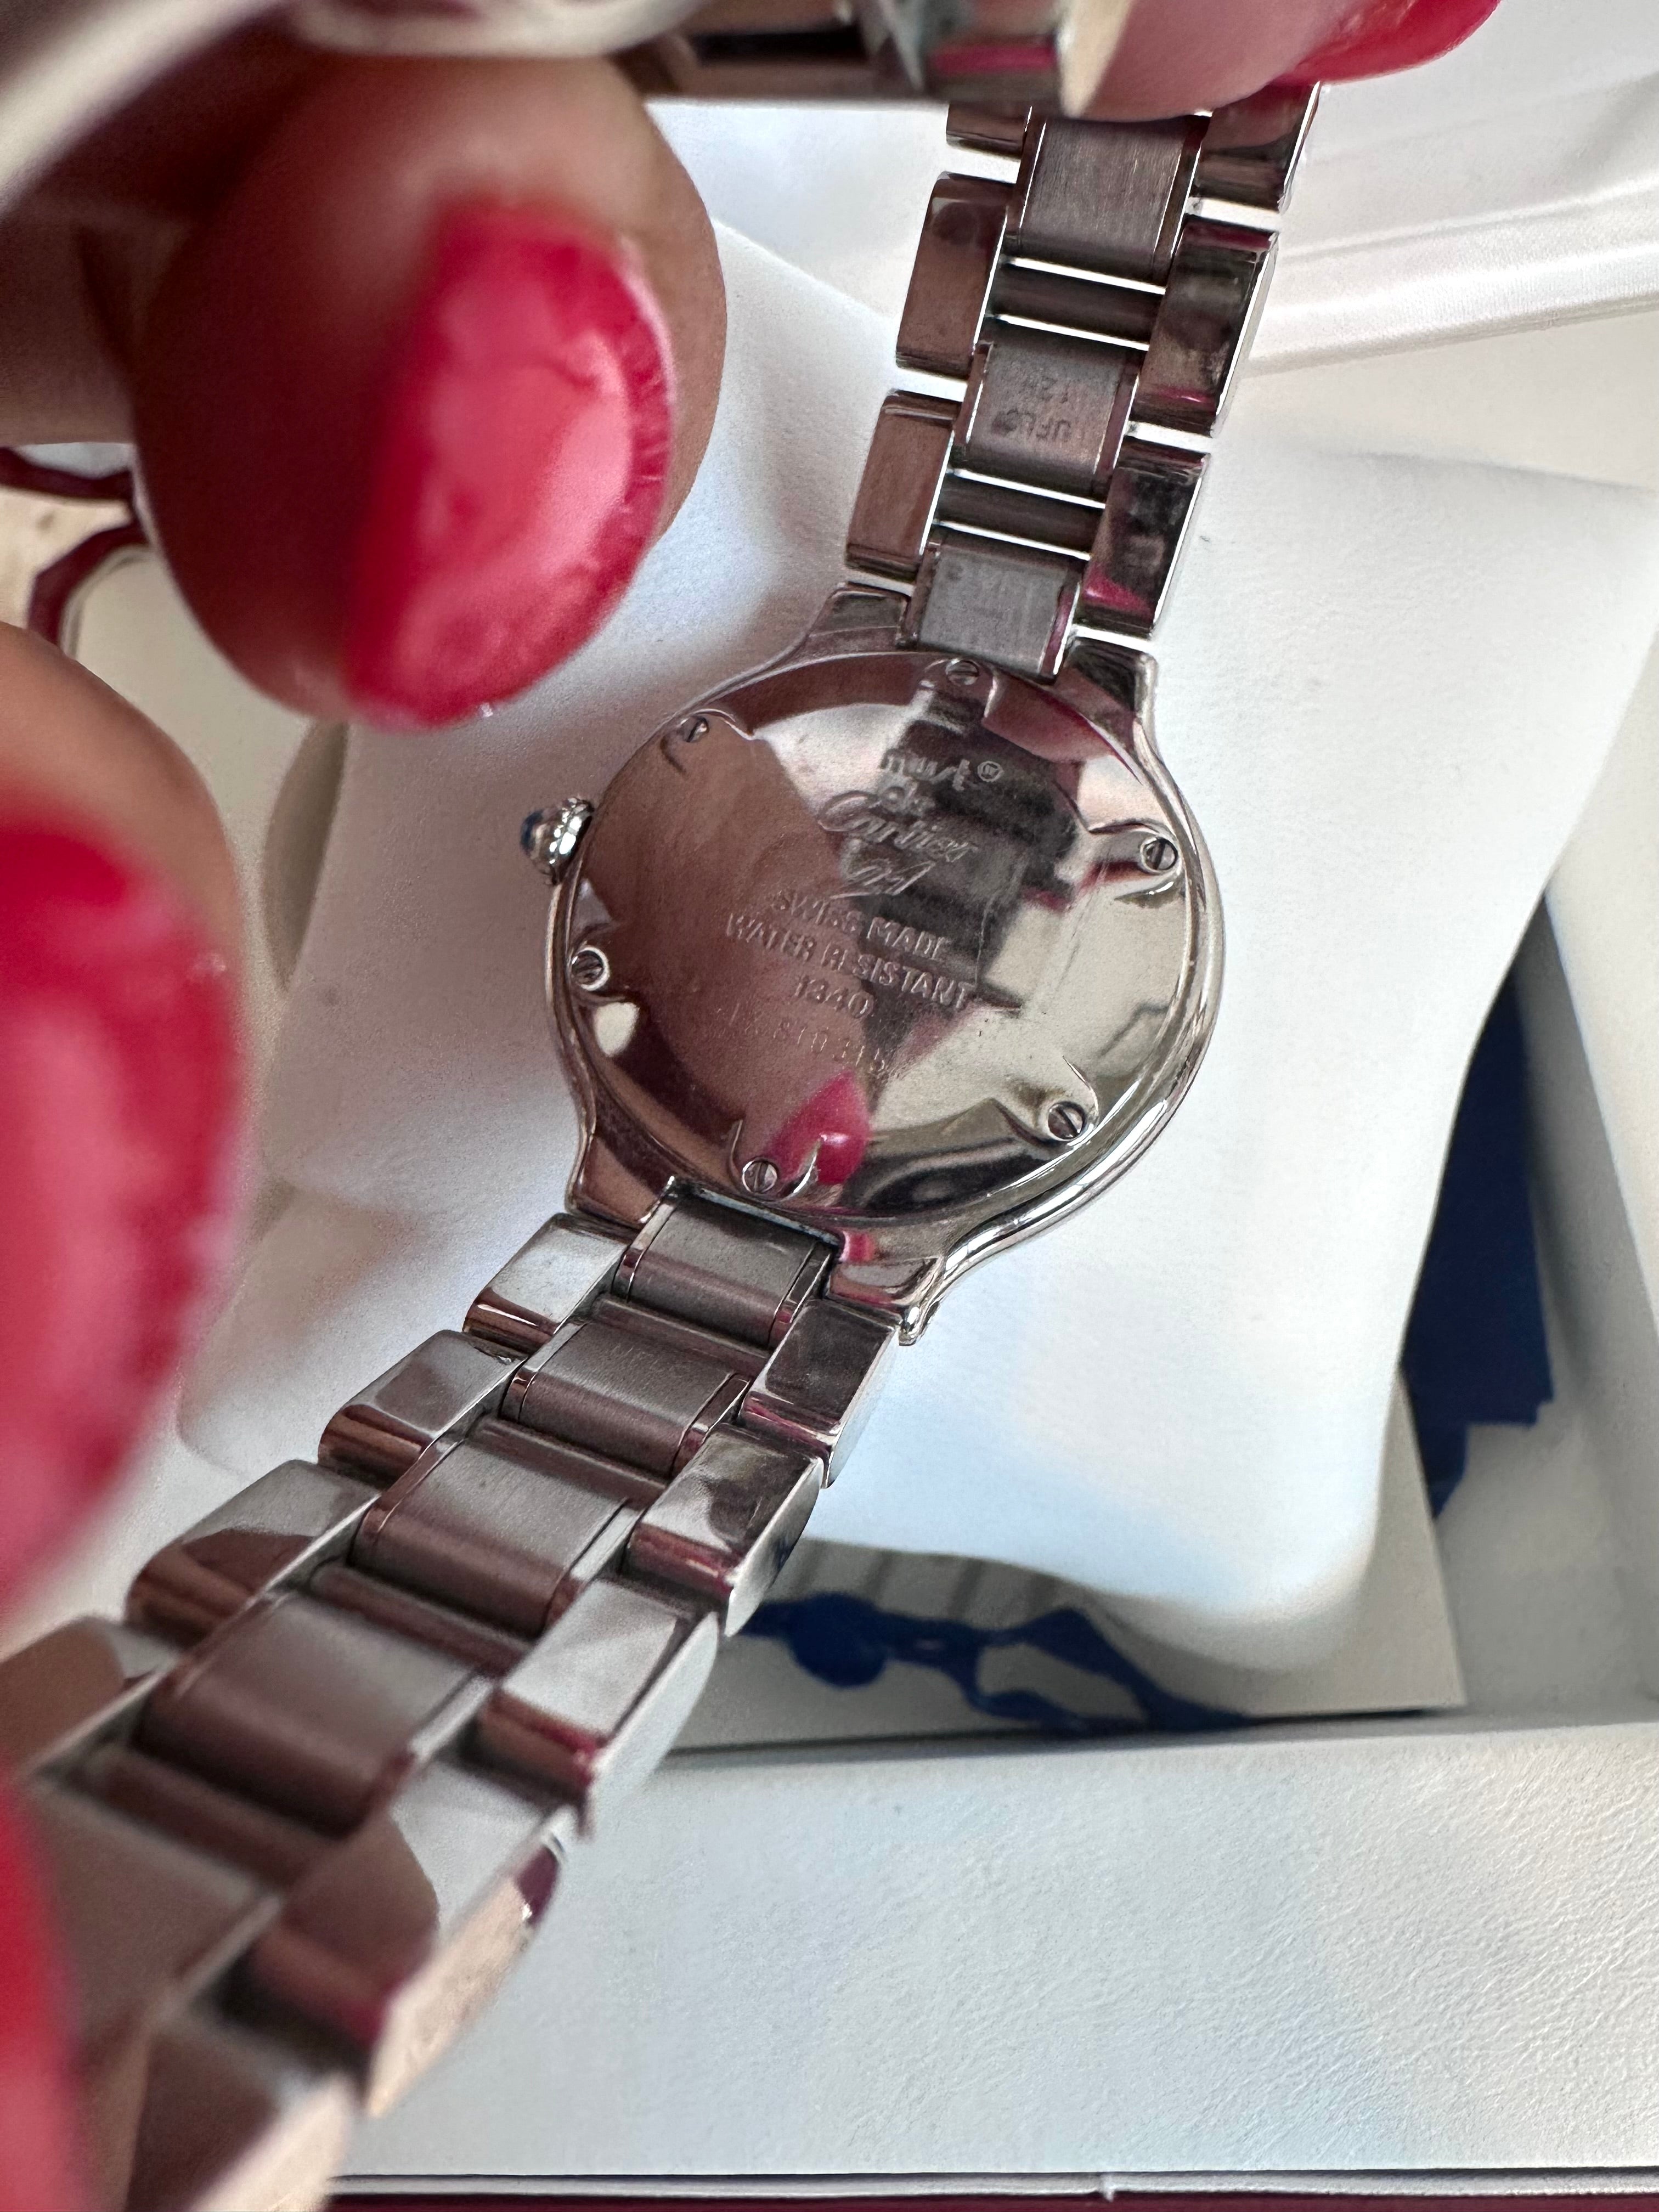 Pre-Owned CARTIER Must De Cartier 21 Ladies Steel Watch